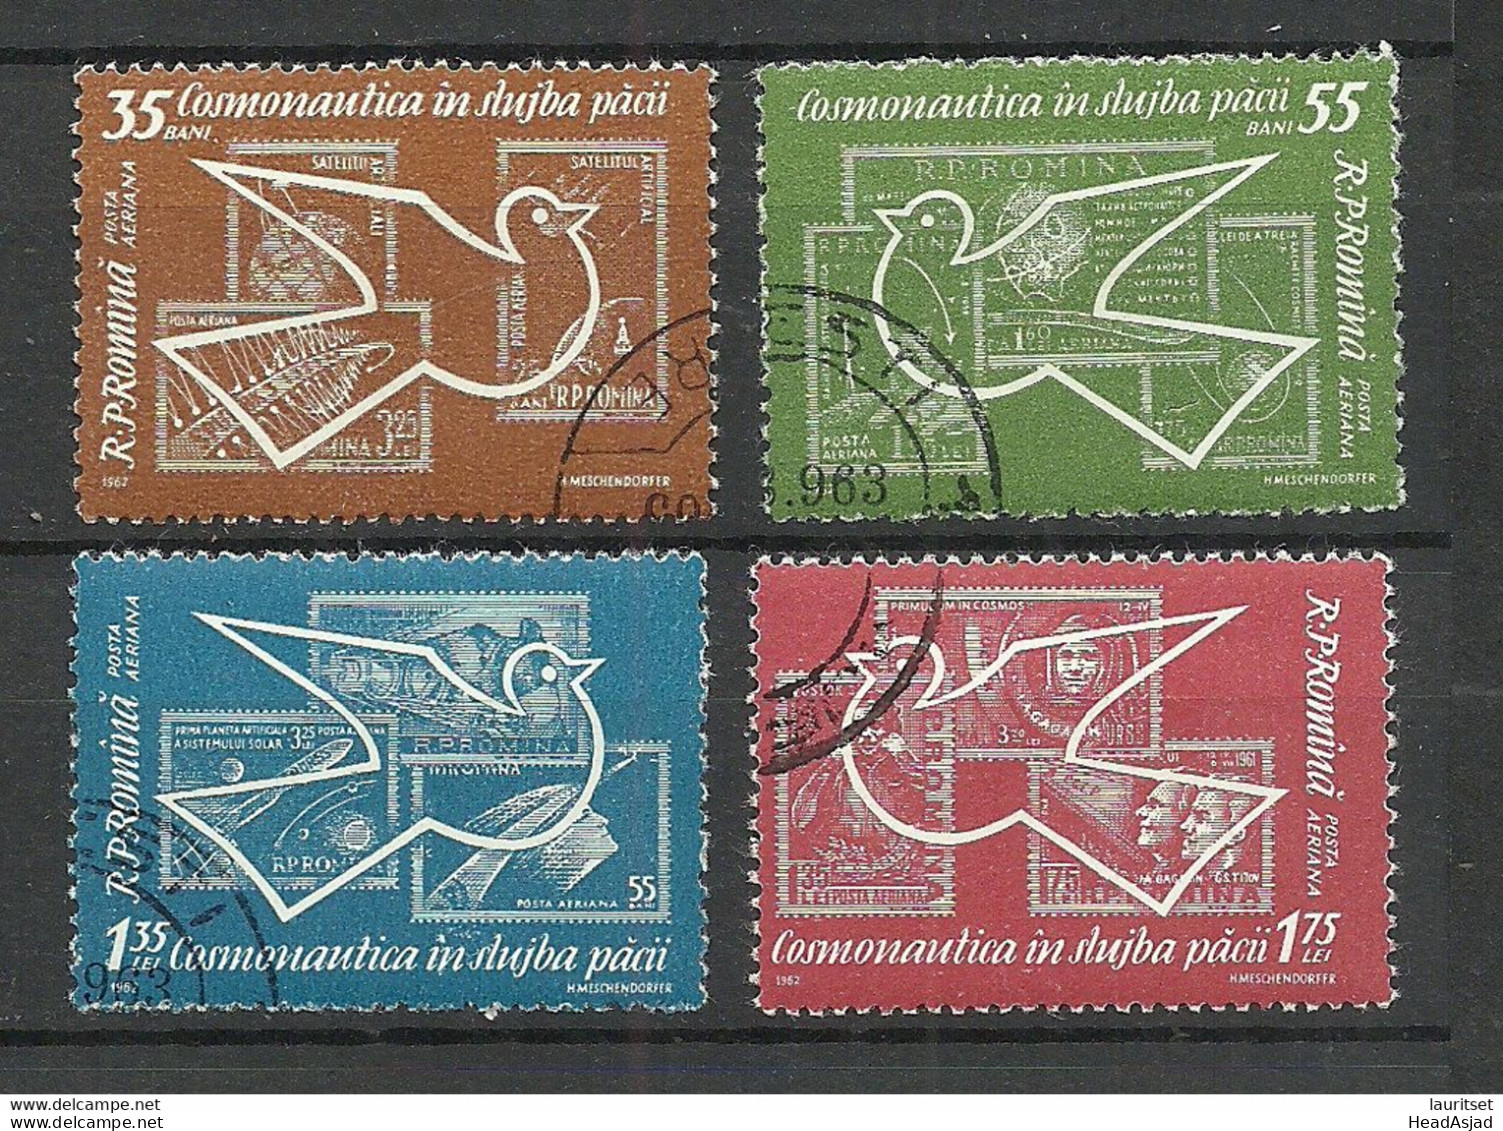 Romania 1962 Michel 2086 - 2089 Kosmonautik Space Weltraumforschung Stamps On Stamp - Briefmarken Auf Briefmarken